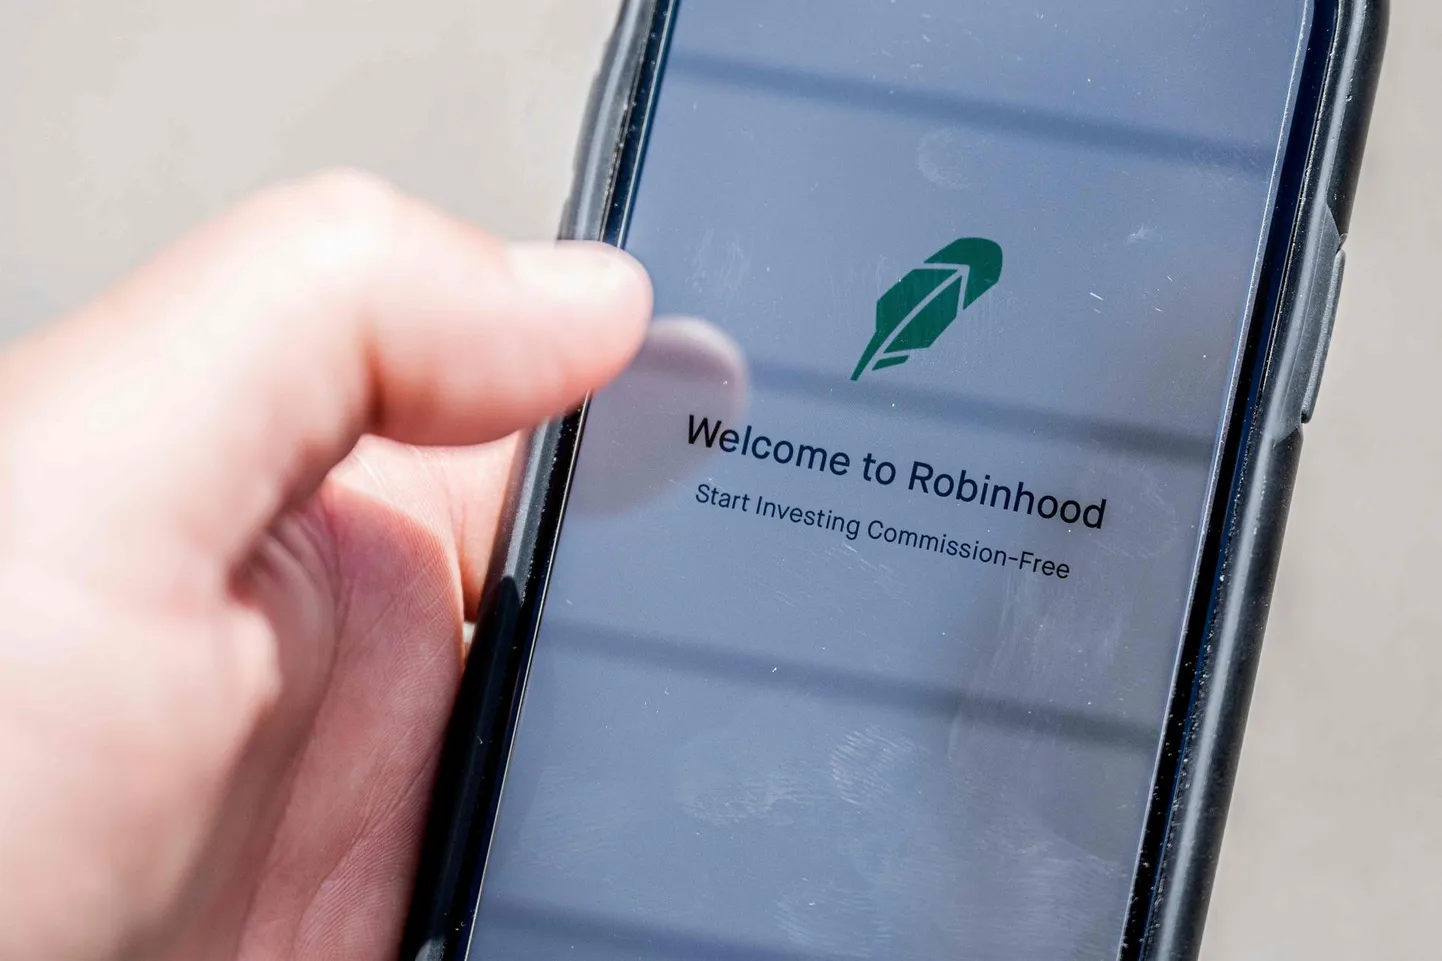 Robinhood pakub tasuta kauplemisplatvormi nutitelefonile, aga ka veebilehekülge, mille kaudu saab kaubelda aktsiate, börsil kaubeldavate fondide (ETF), toorainete ja optsioonidega. Krüptovaluutade huvilistele pakutakse seda võimalust rakenduse Robinhood Crypto kaudu.